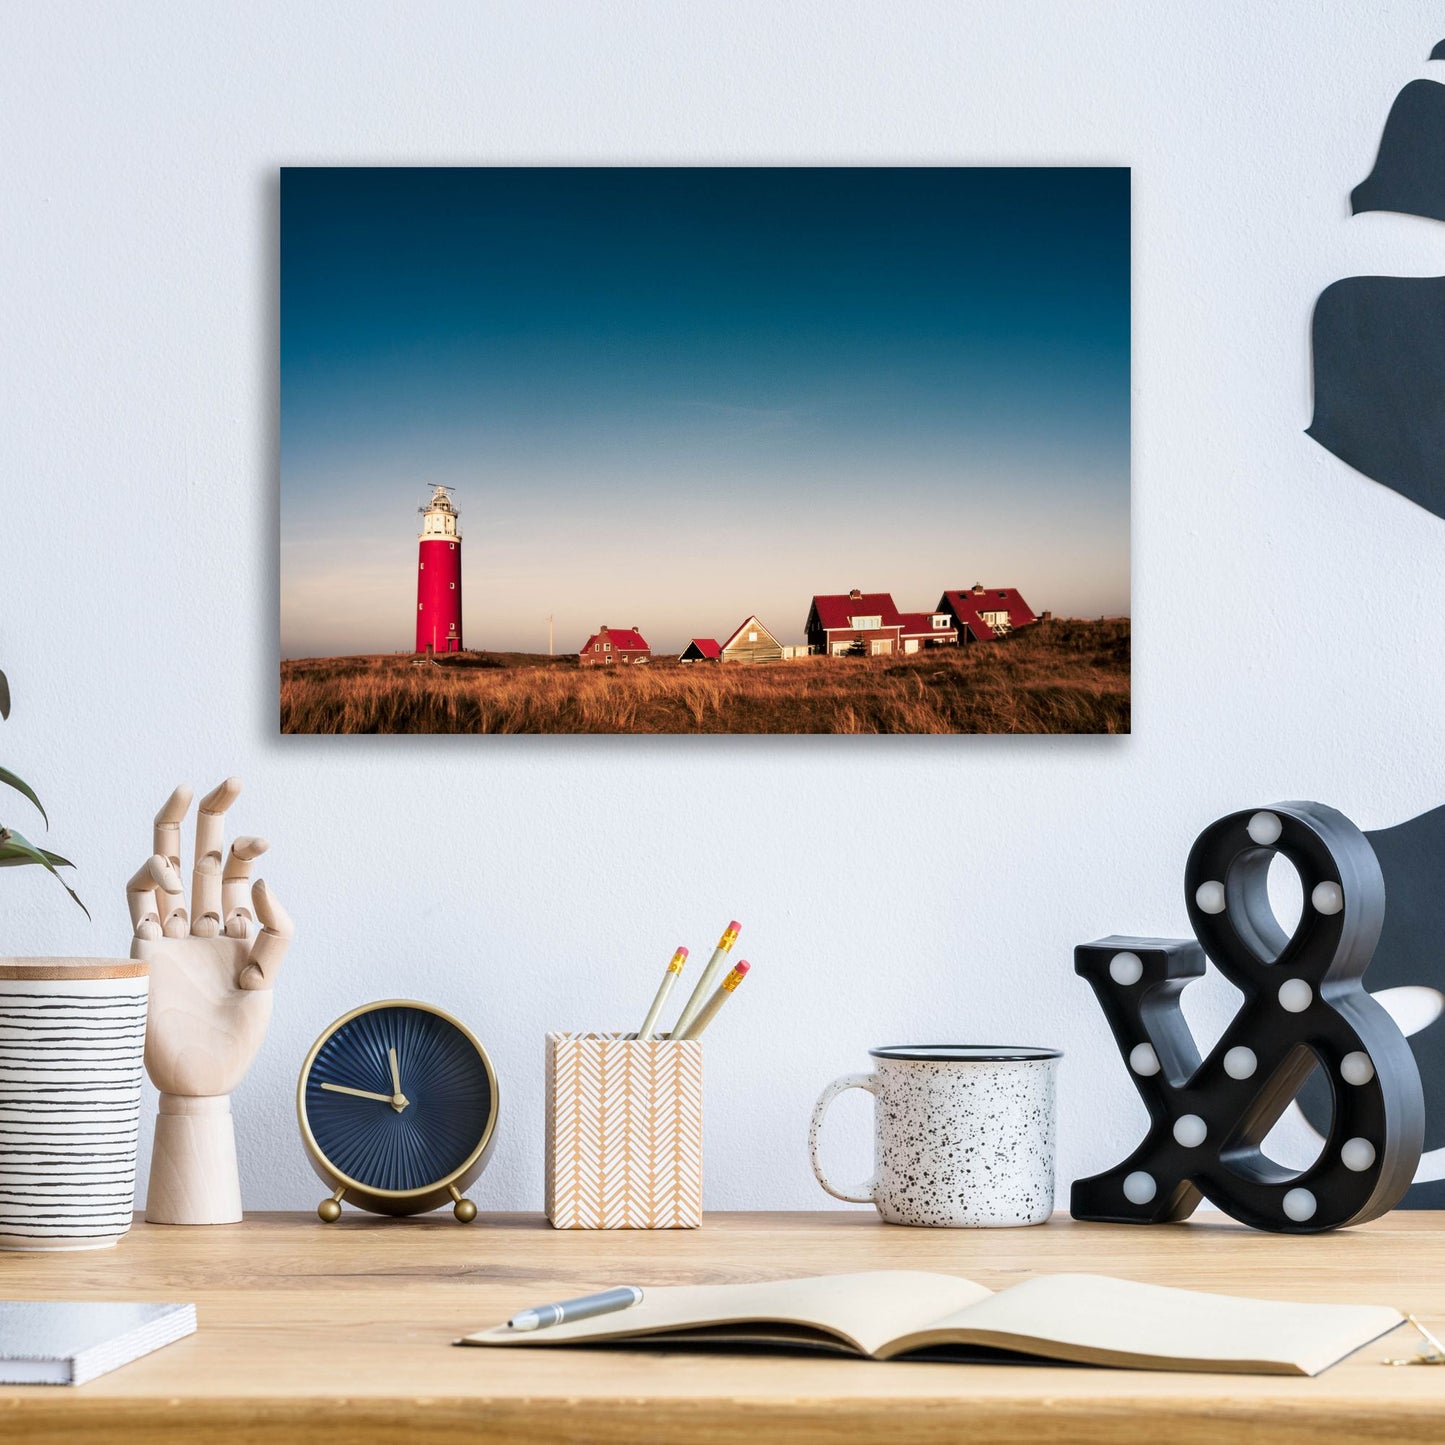 Epic Art 'Texel Lighthouse' by Istvan Nagy, Acrylic Glass Wall Art,16x12